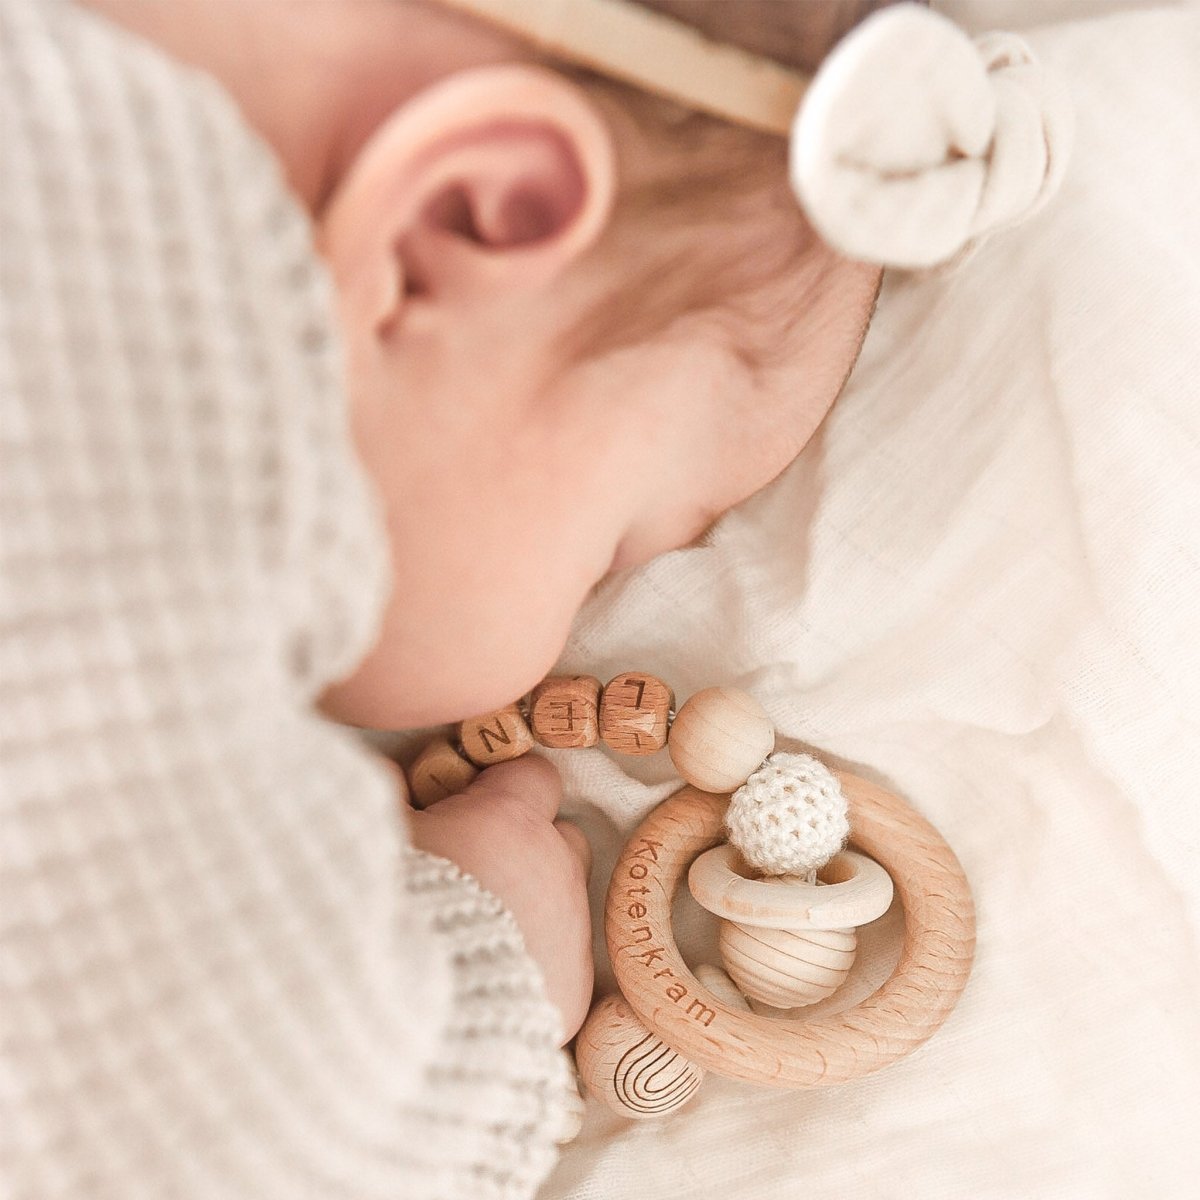 Personalisierte Babygeschenke – Geschenke zur Geburt, Taufe & Co. mit Namen